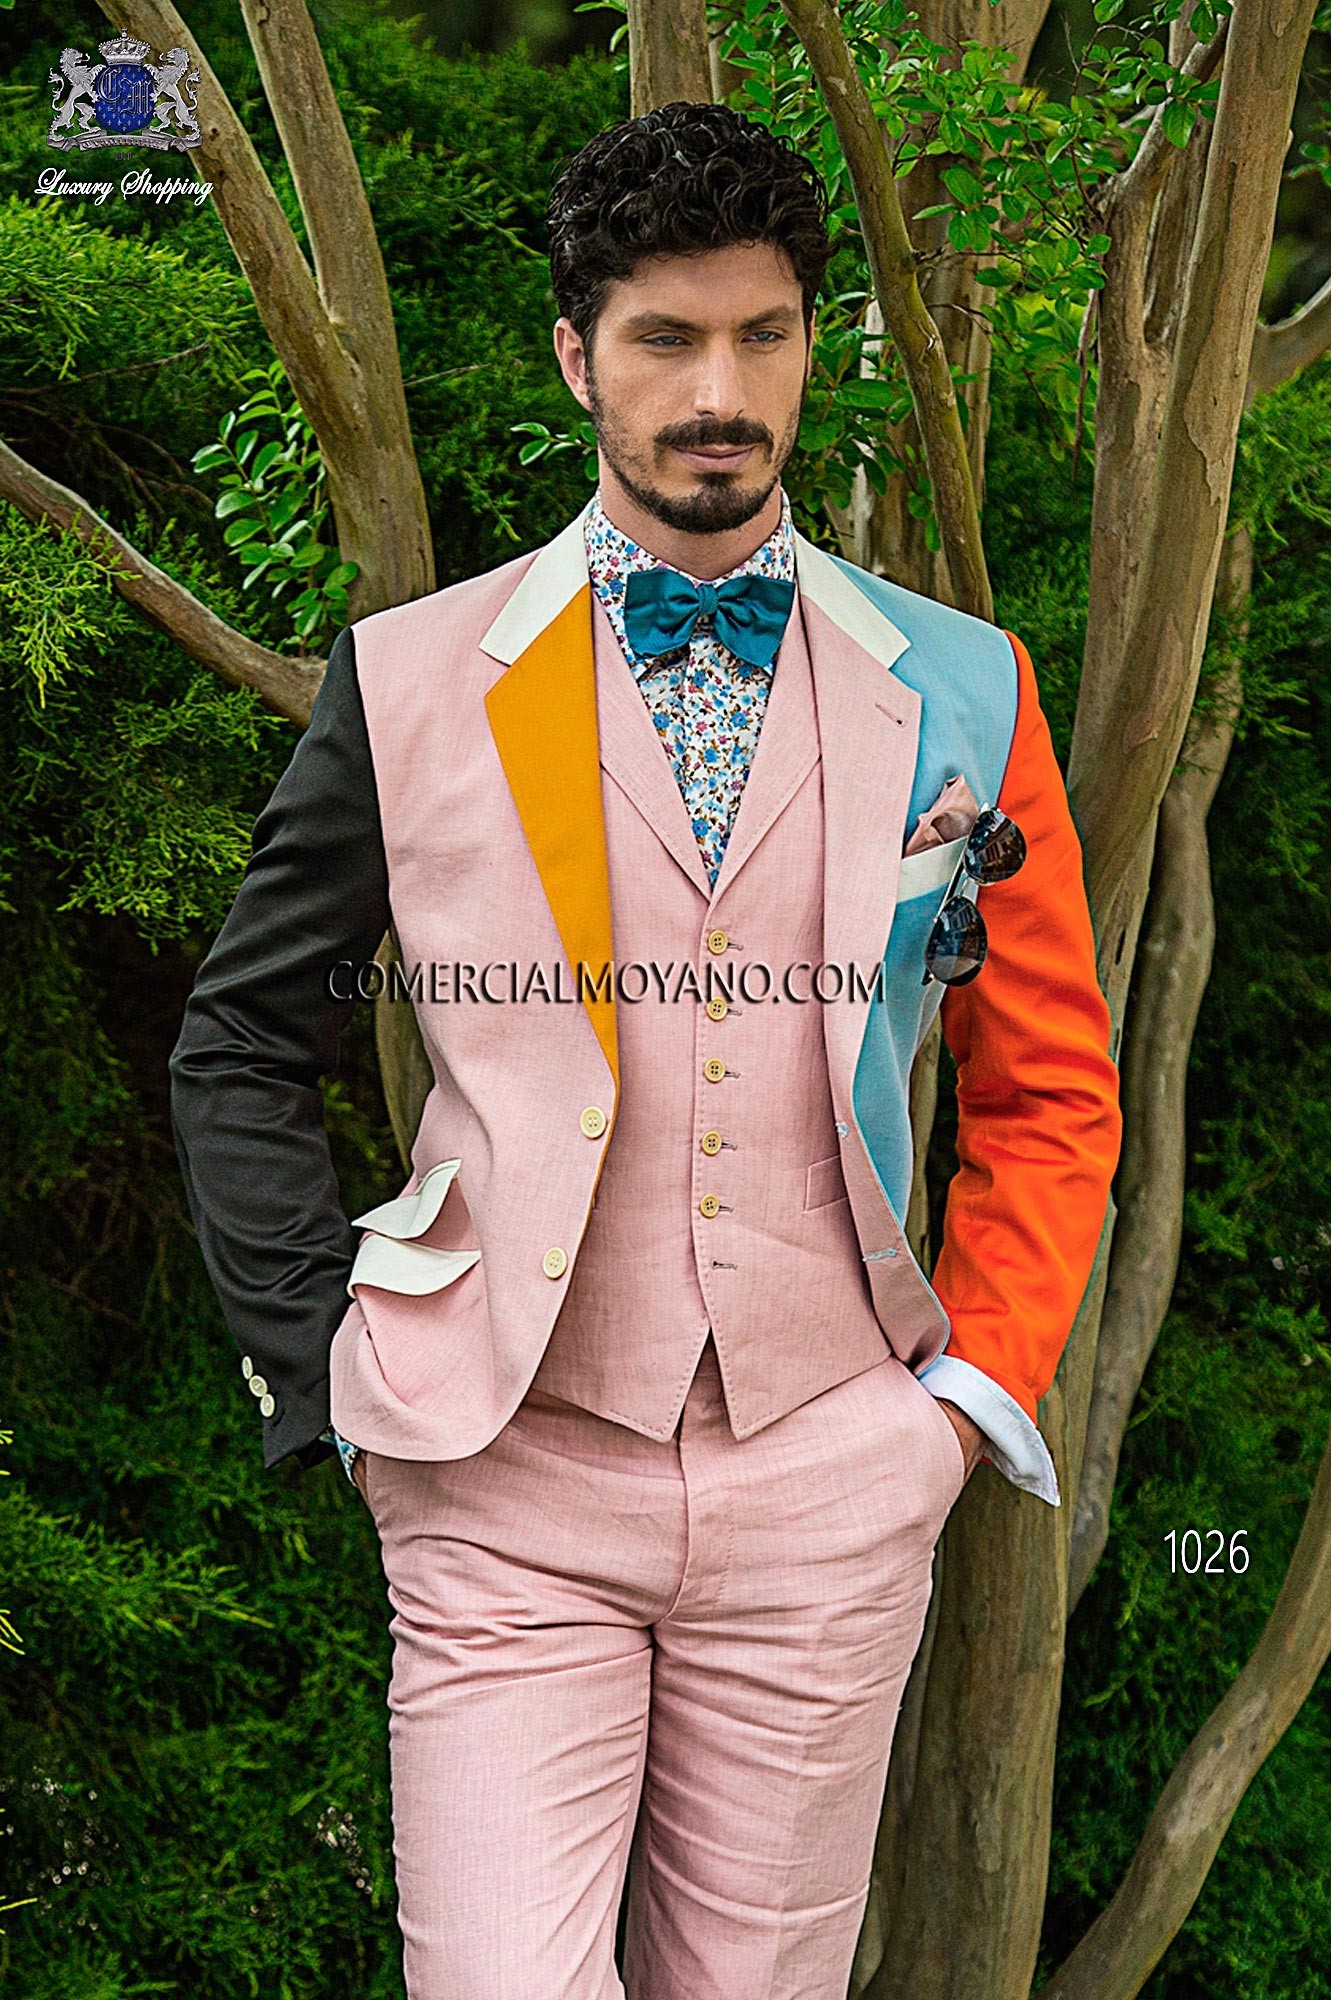 Traje Hipster de novio celeste/rosa modelo: 1026 Mario Moyano colección Hipster